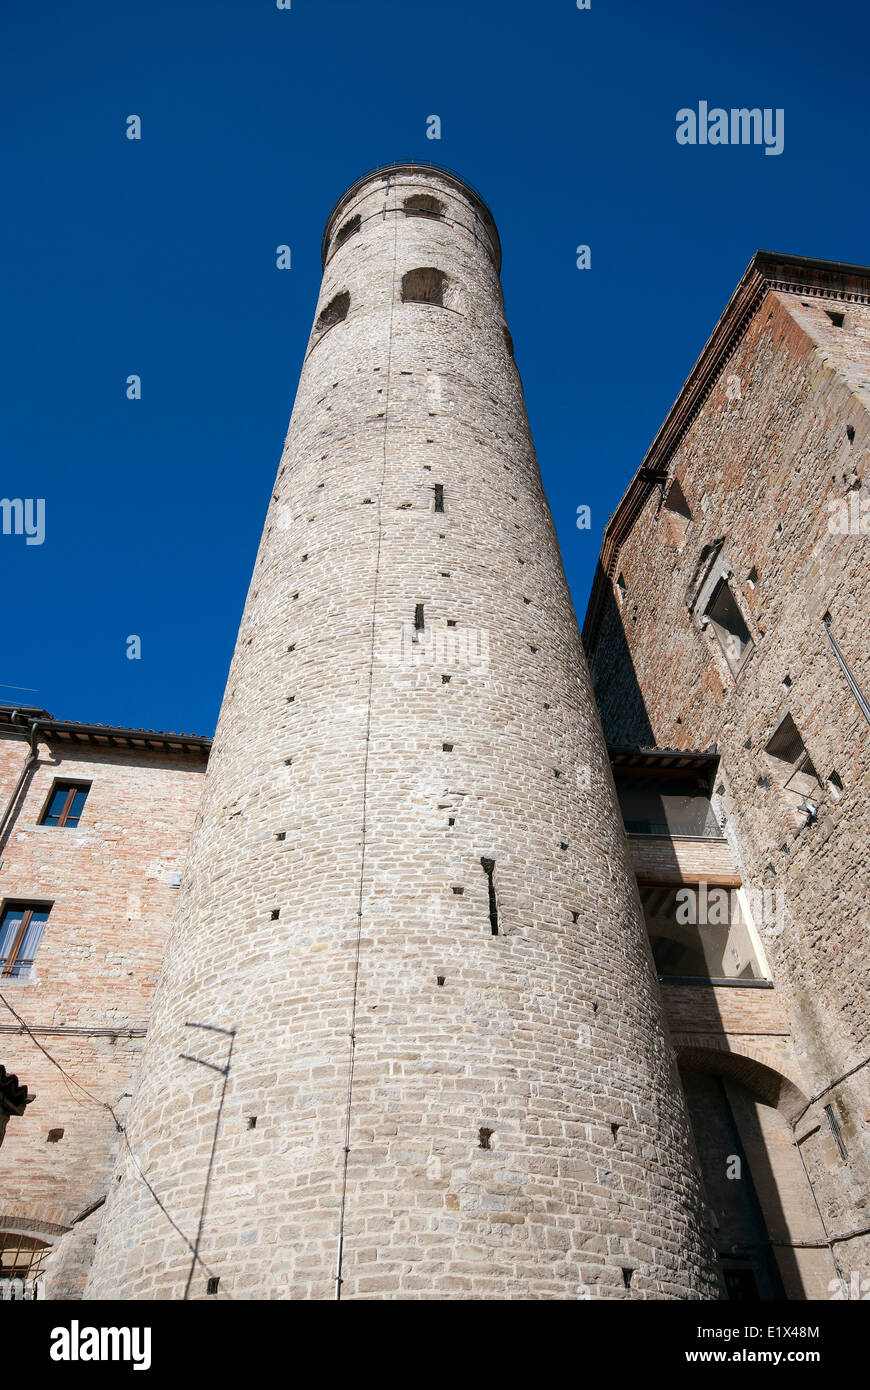 Clocher cylindrique, Città di Castello, haute vallée du Tibre, Ombrie, Italie Banque D'Images